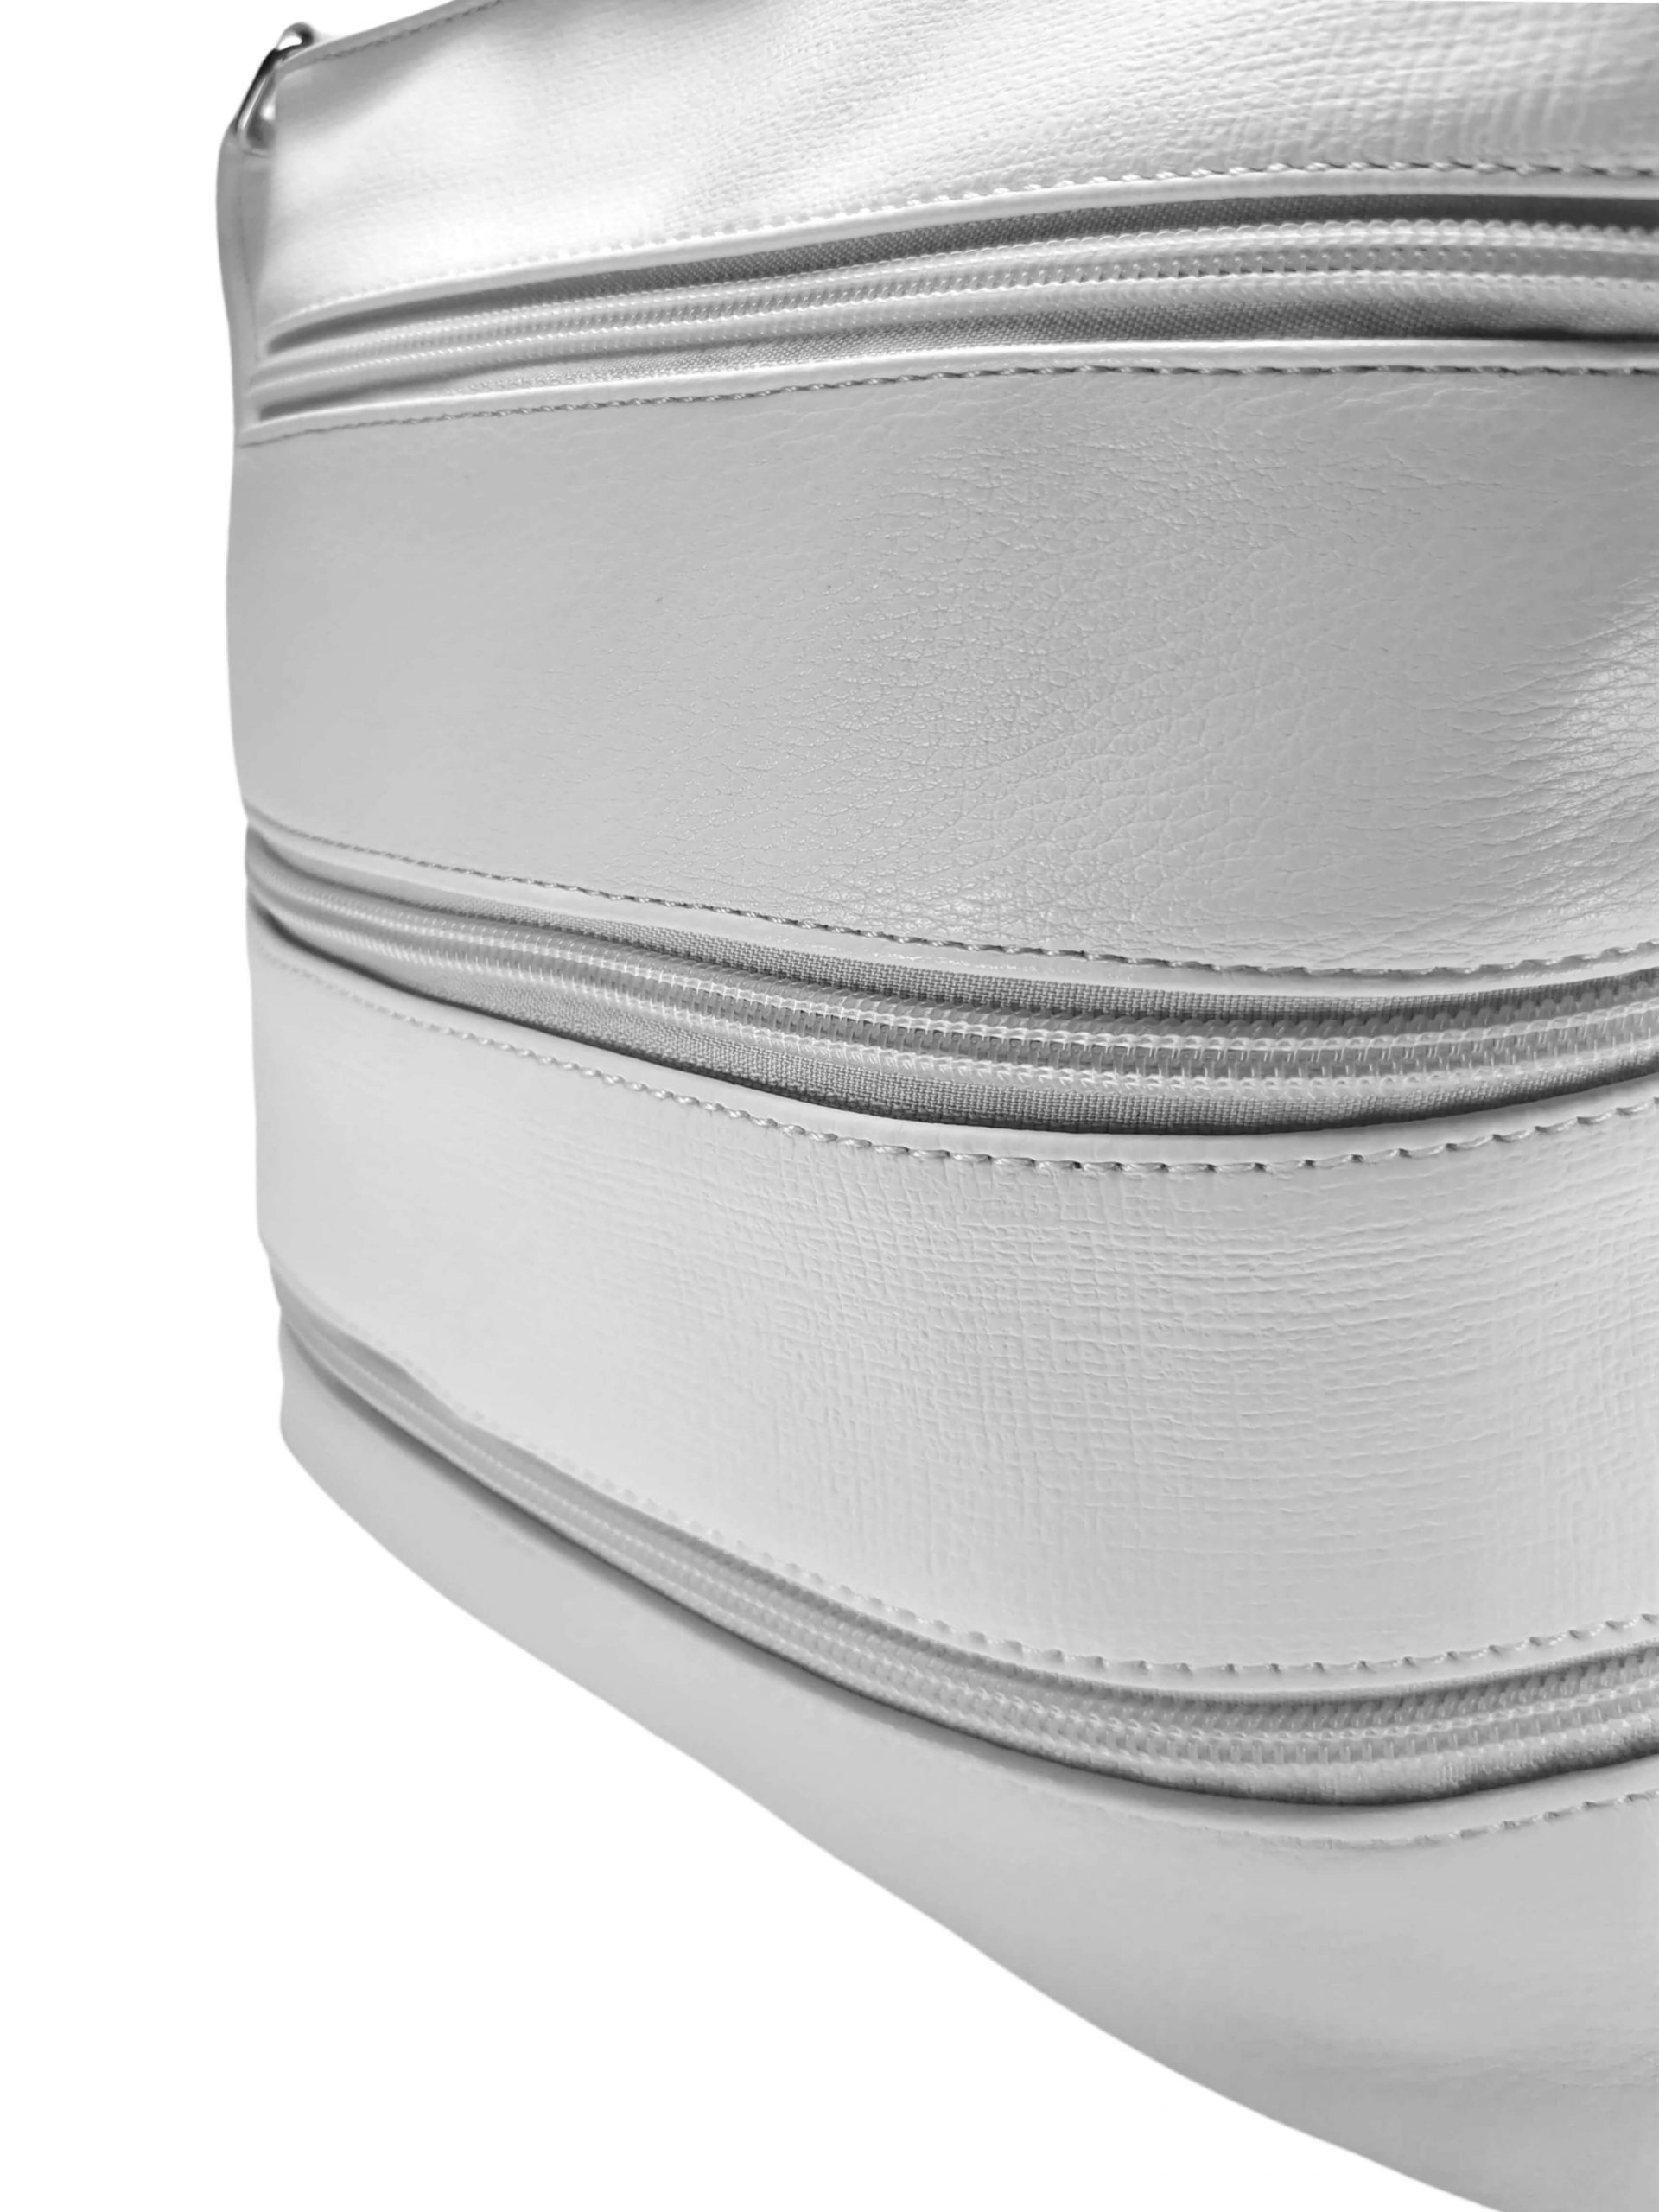 Bílá crossbody kabelka se stylovými zipy, Tapple H17286N, detail crossbody kabelky